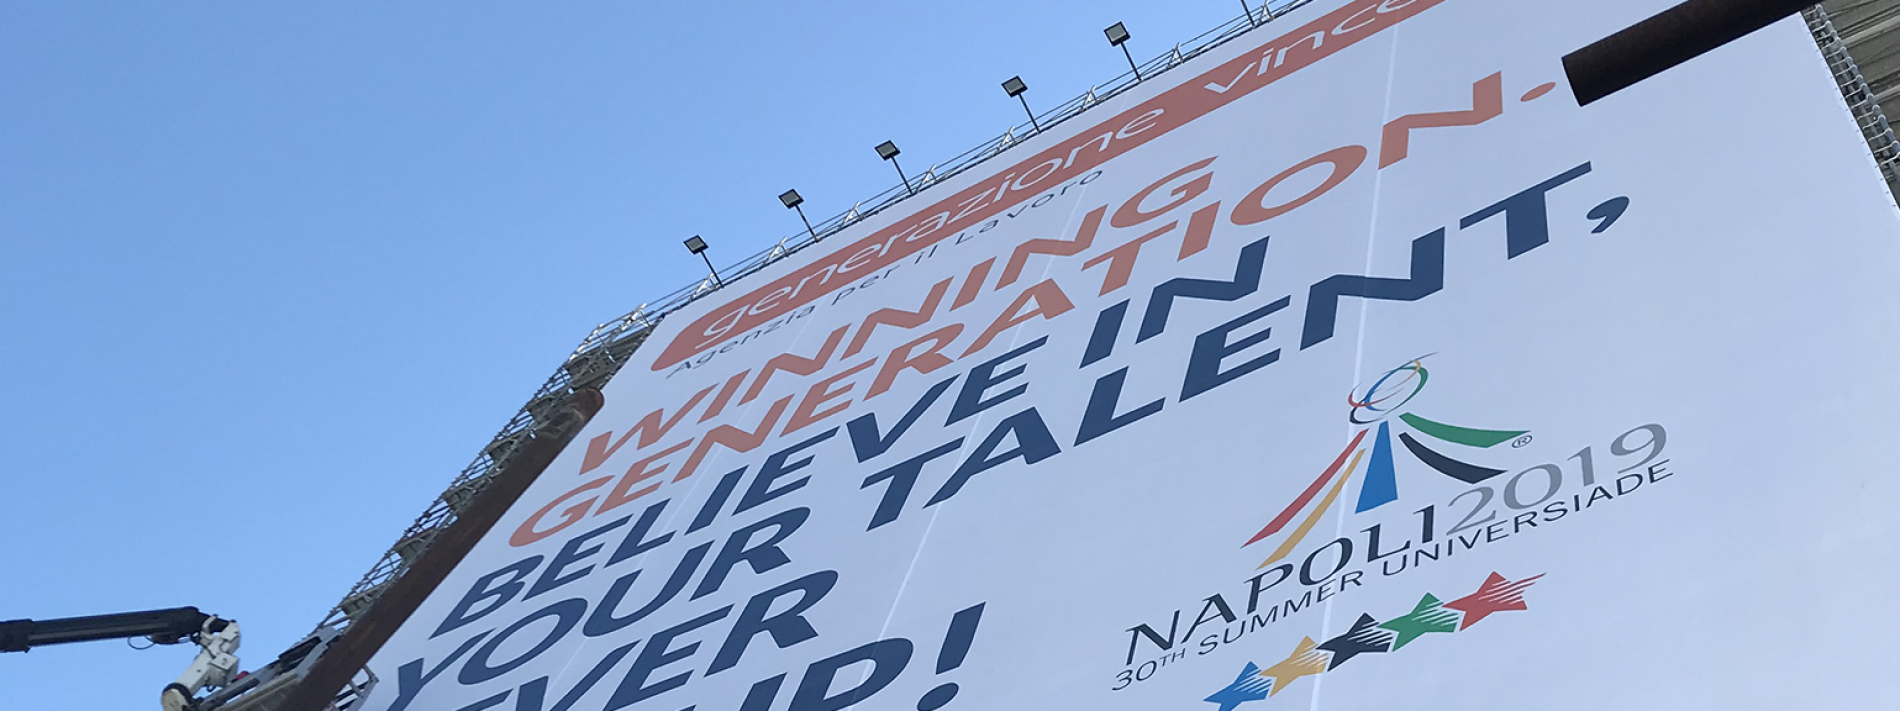 Universiade Napoli 2019 – Generazione Vincente sponsor ufficiale dell’evento